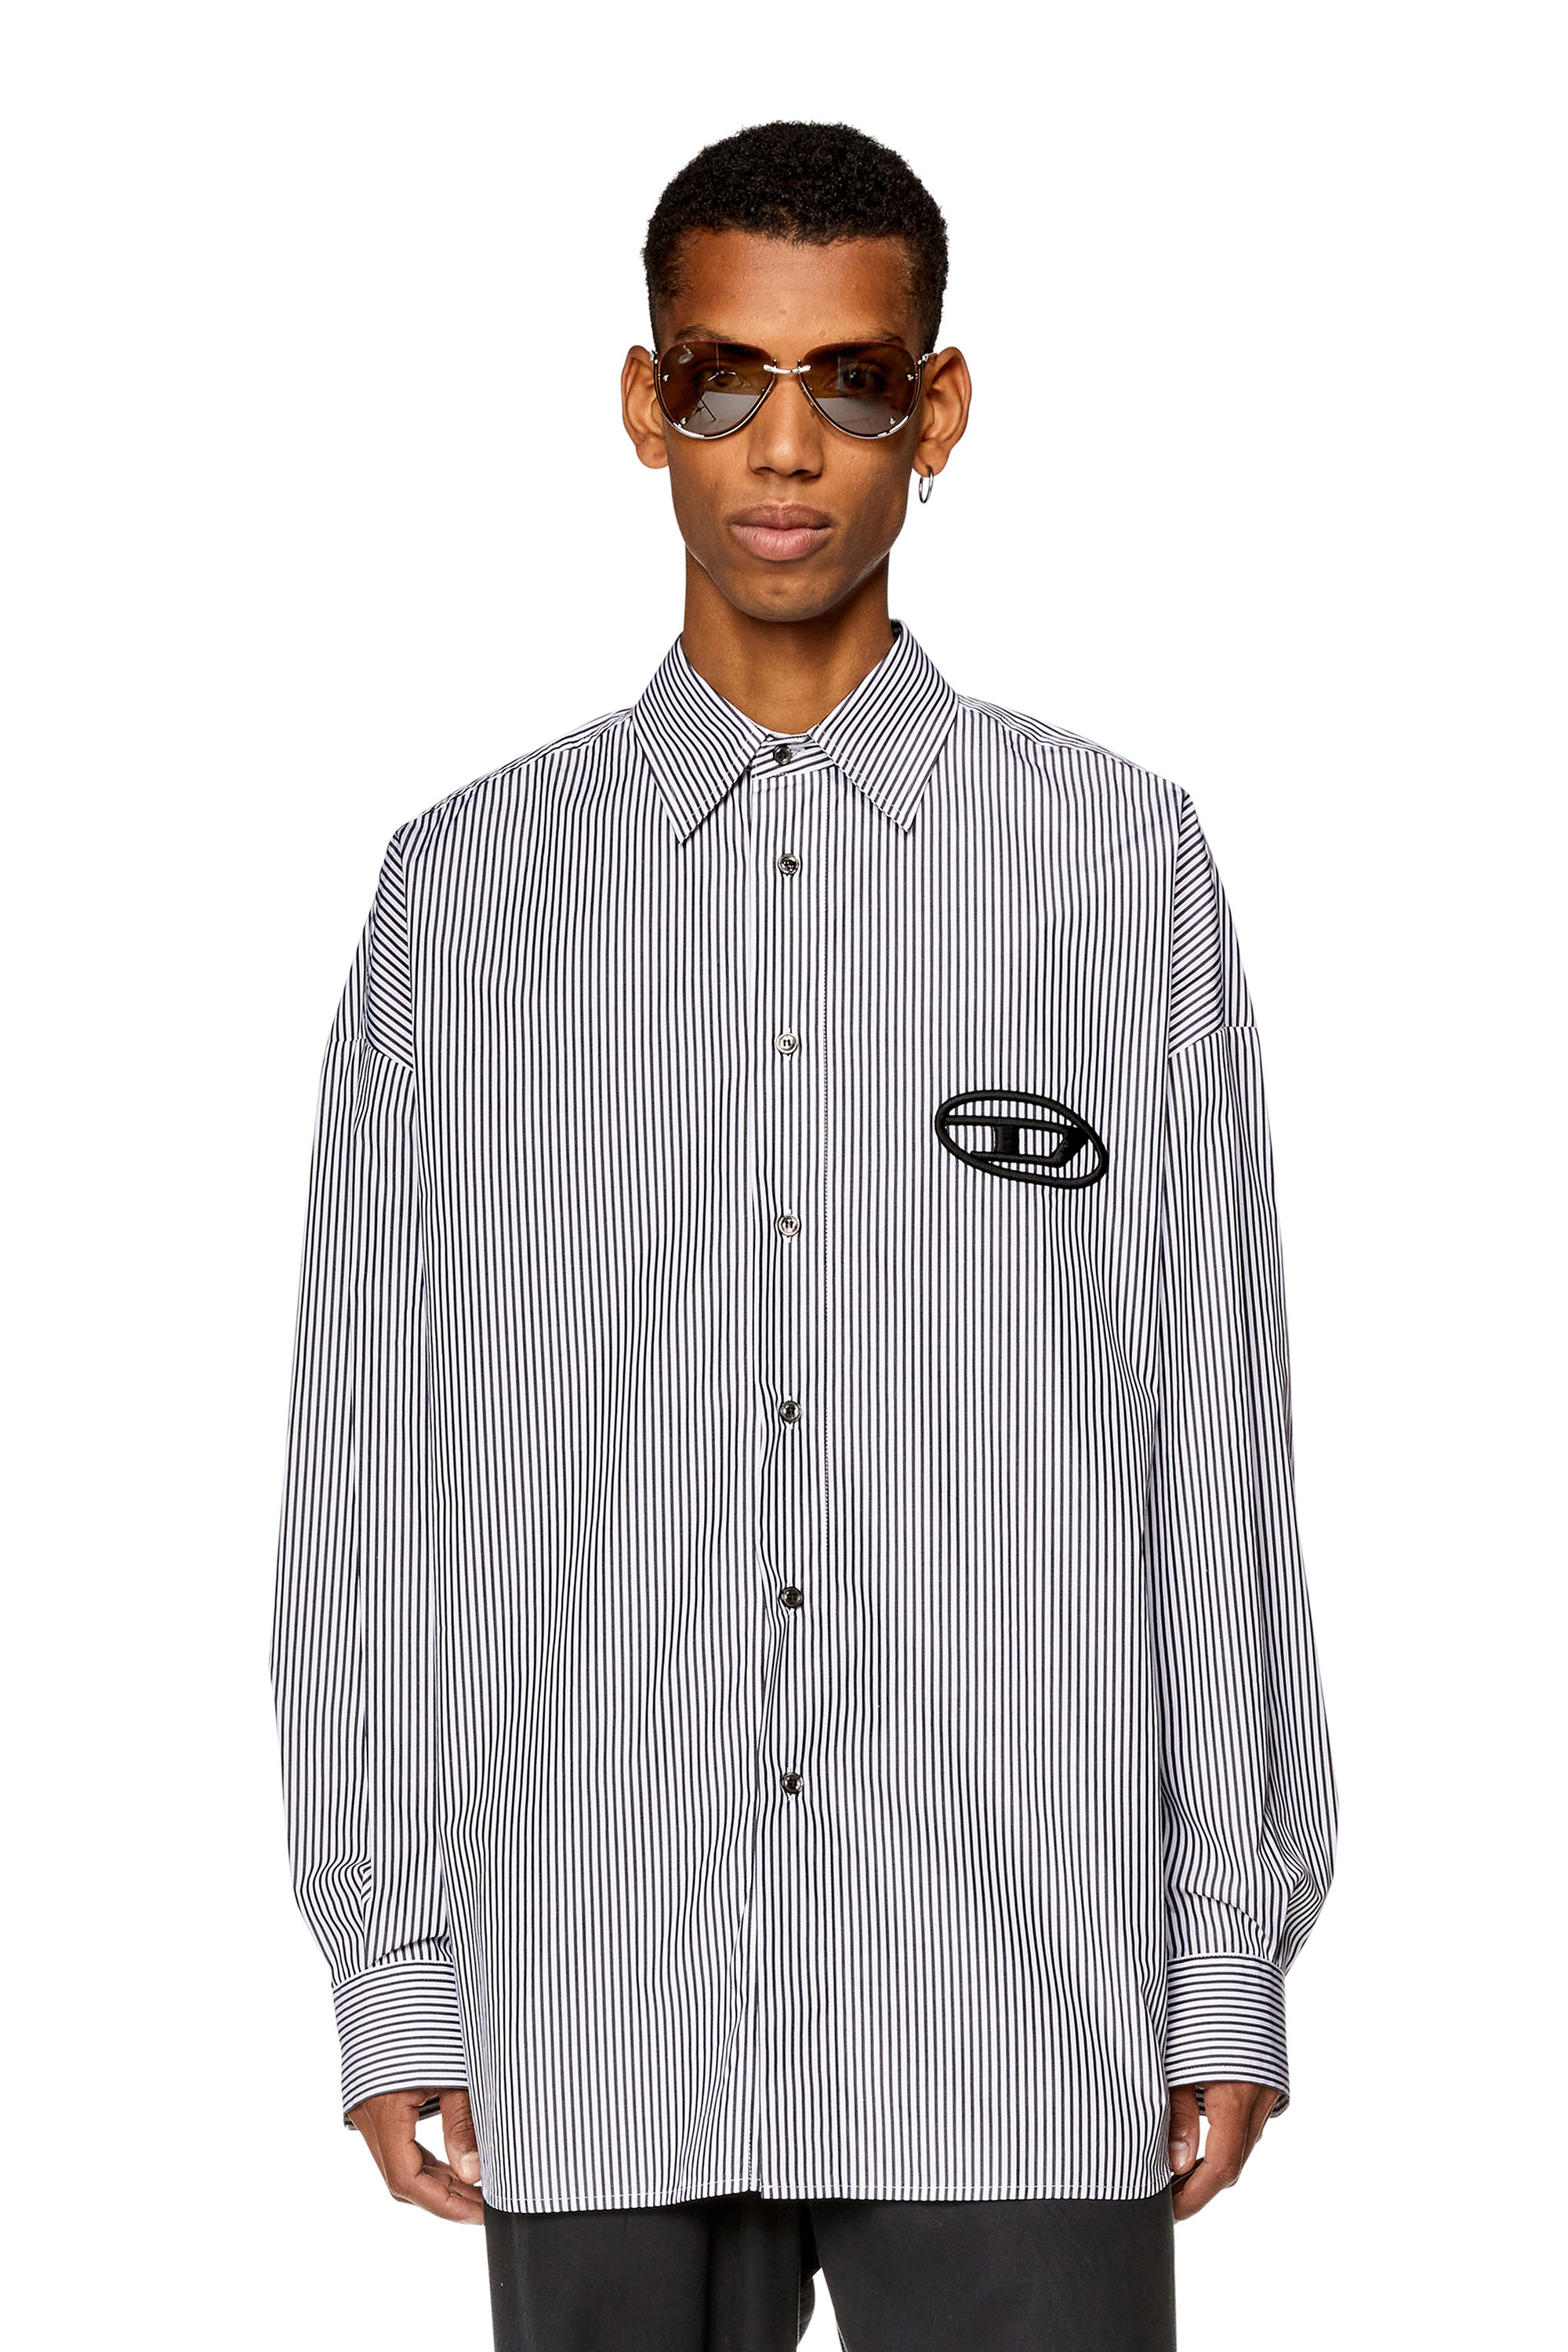 Men's Shirts: in Denim, Cotton, with Logo | Diesel®